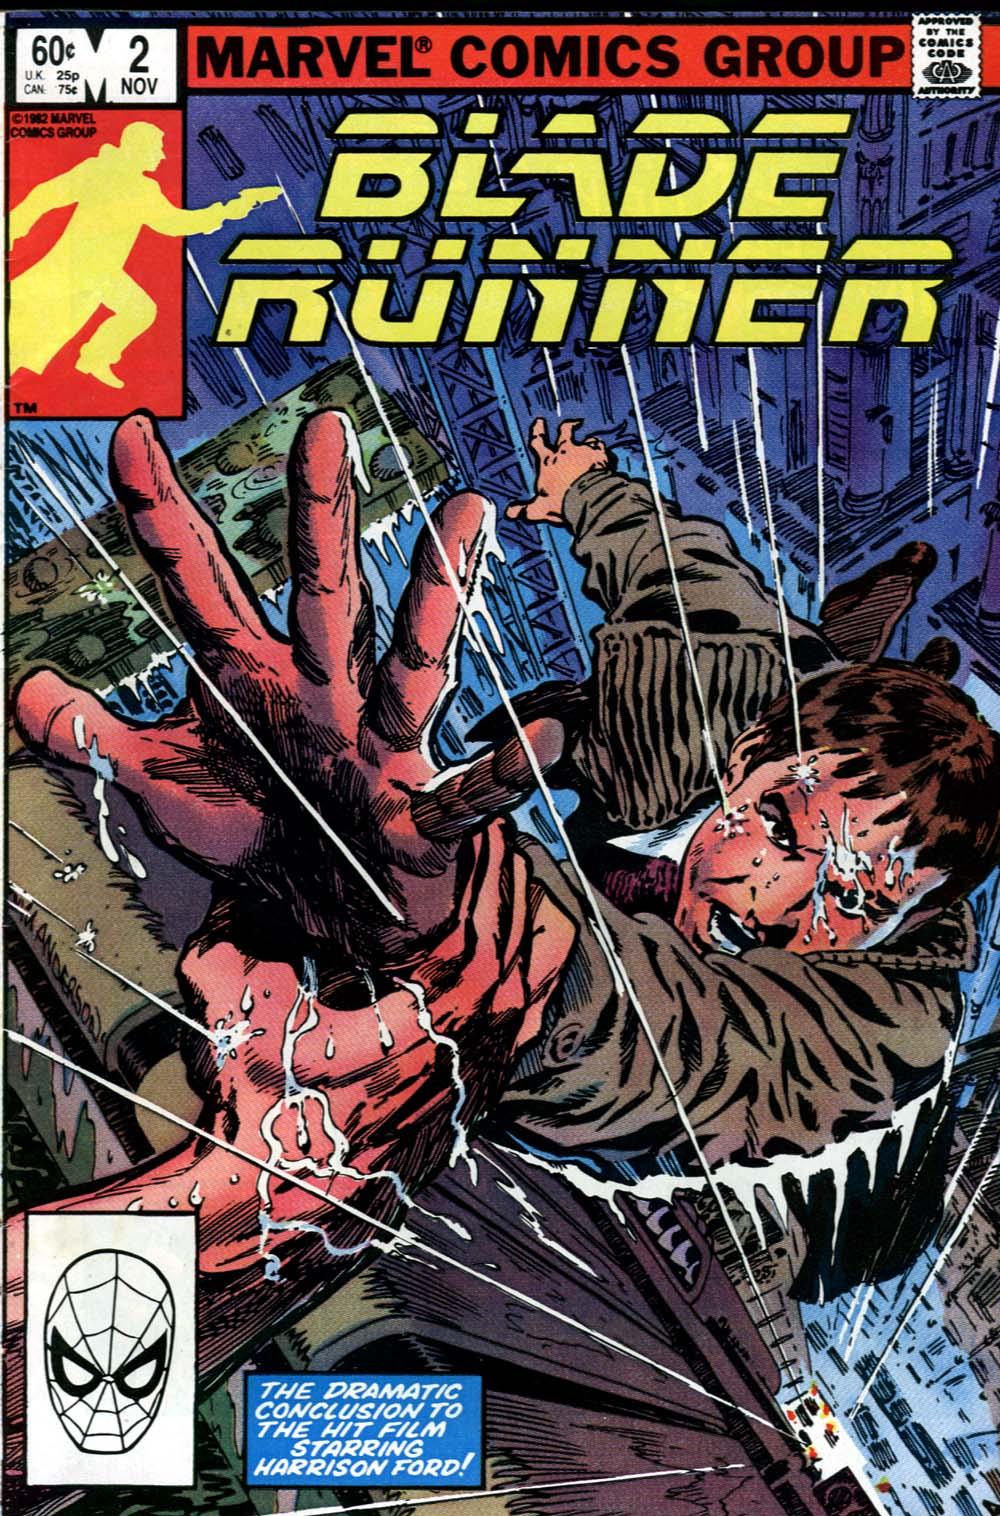 Blade Runner Vol. 1 #2